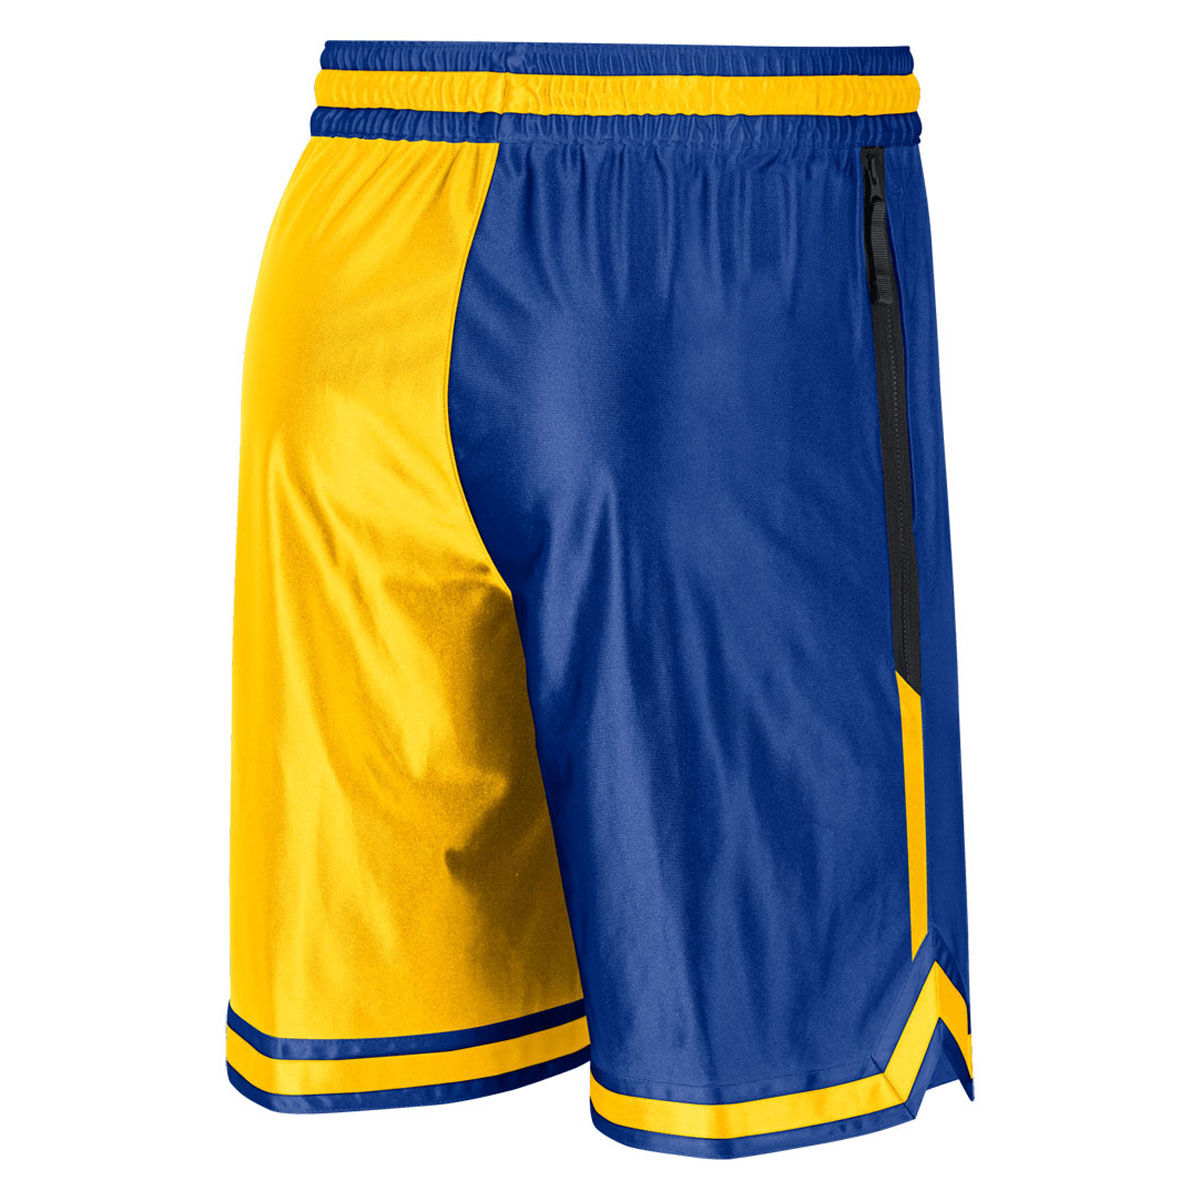 Golden State Warriors Jerseys & Teamwear | NBA Merch | rebel